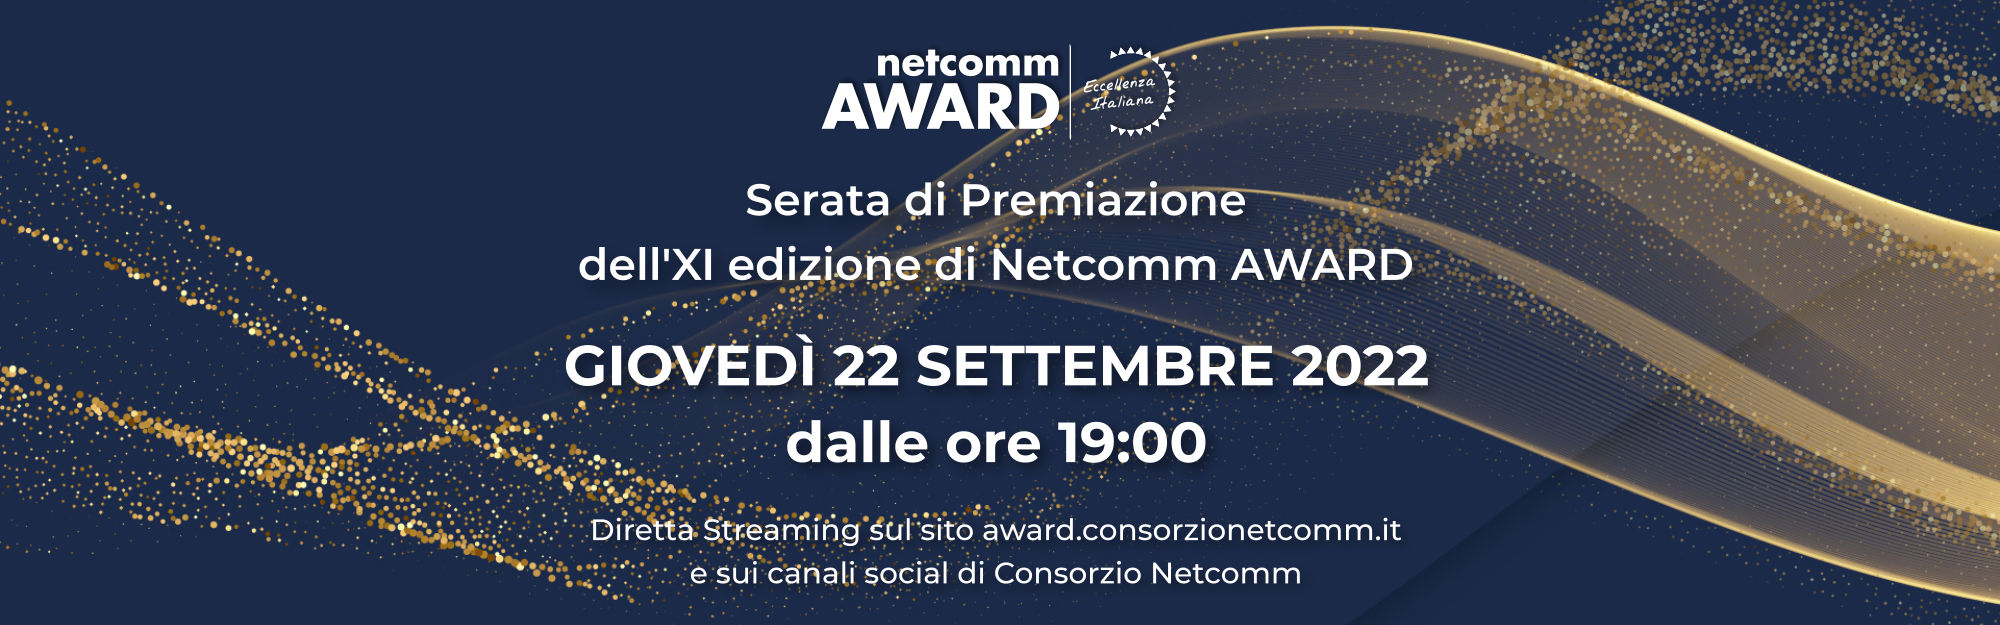 Netcomm AWARD 2022 - Serata di Premiazione